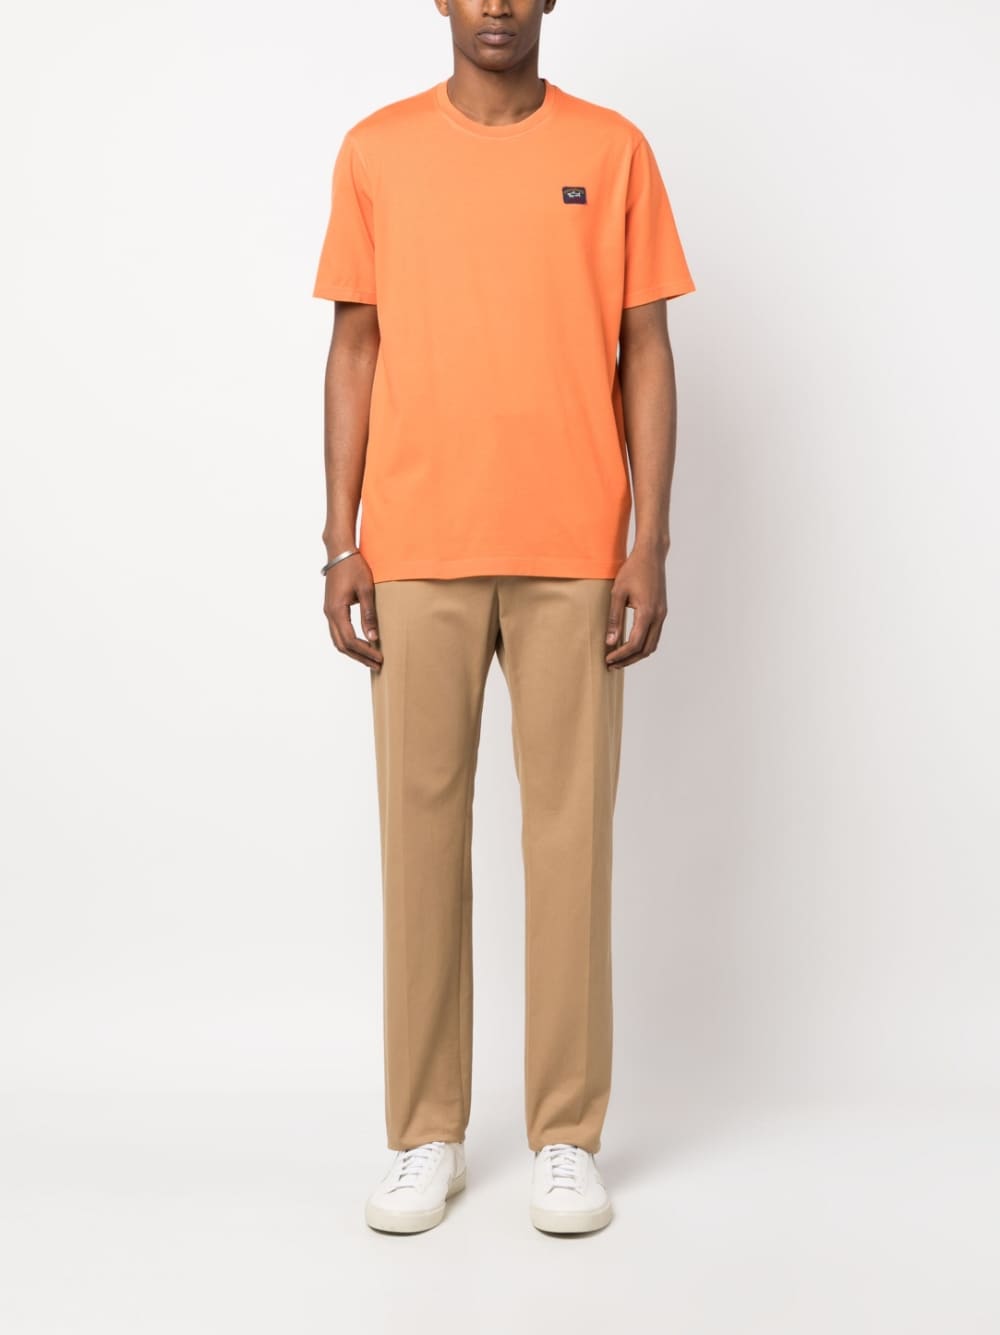 Paul & Shark T-shirt Orange à logo - Lothaire